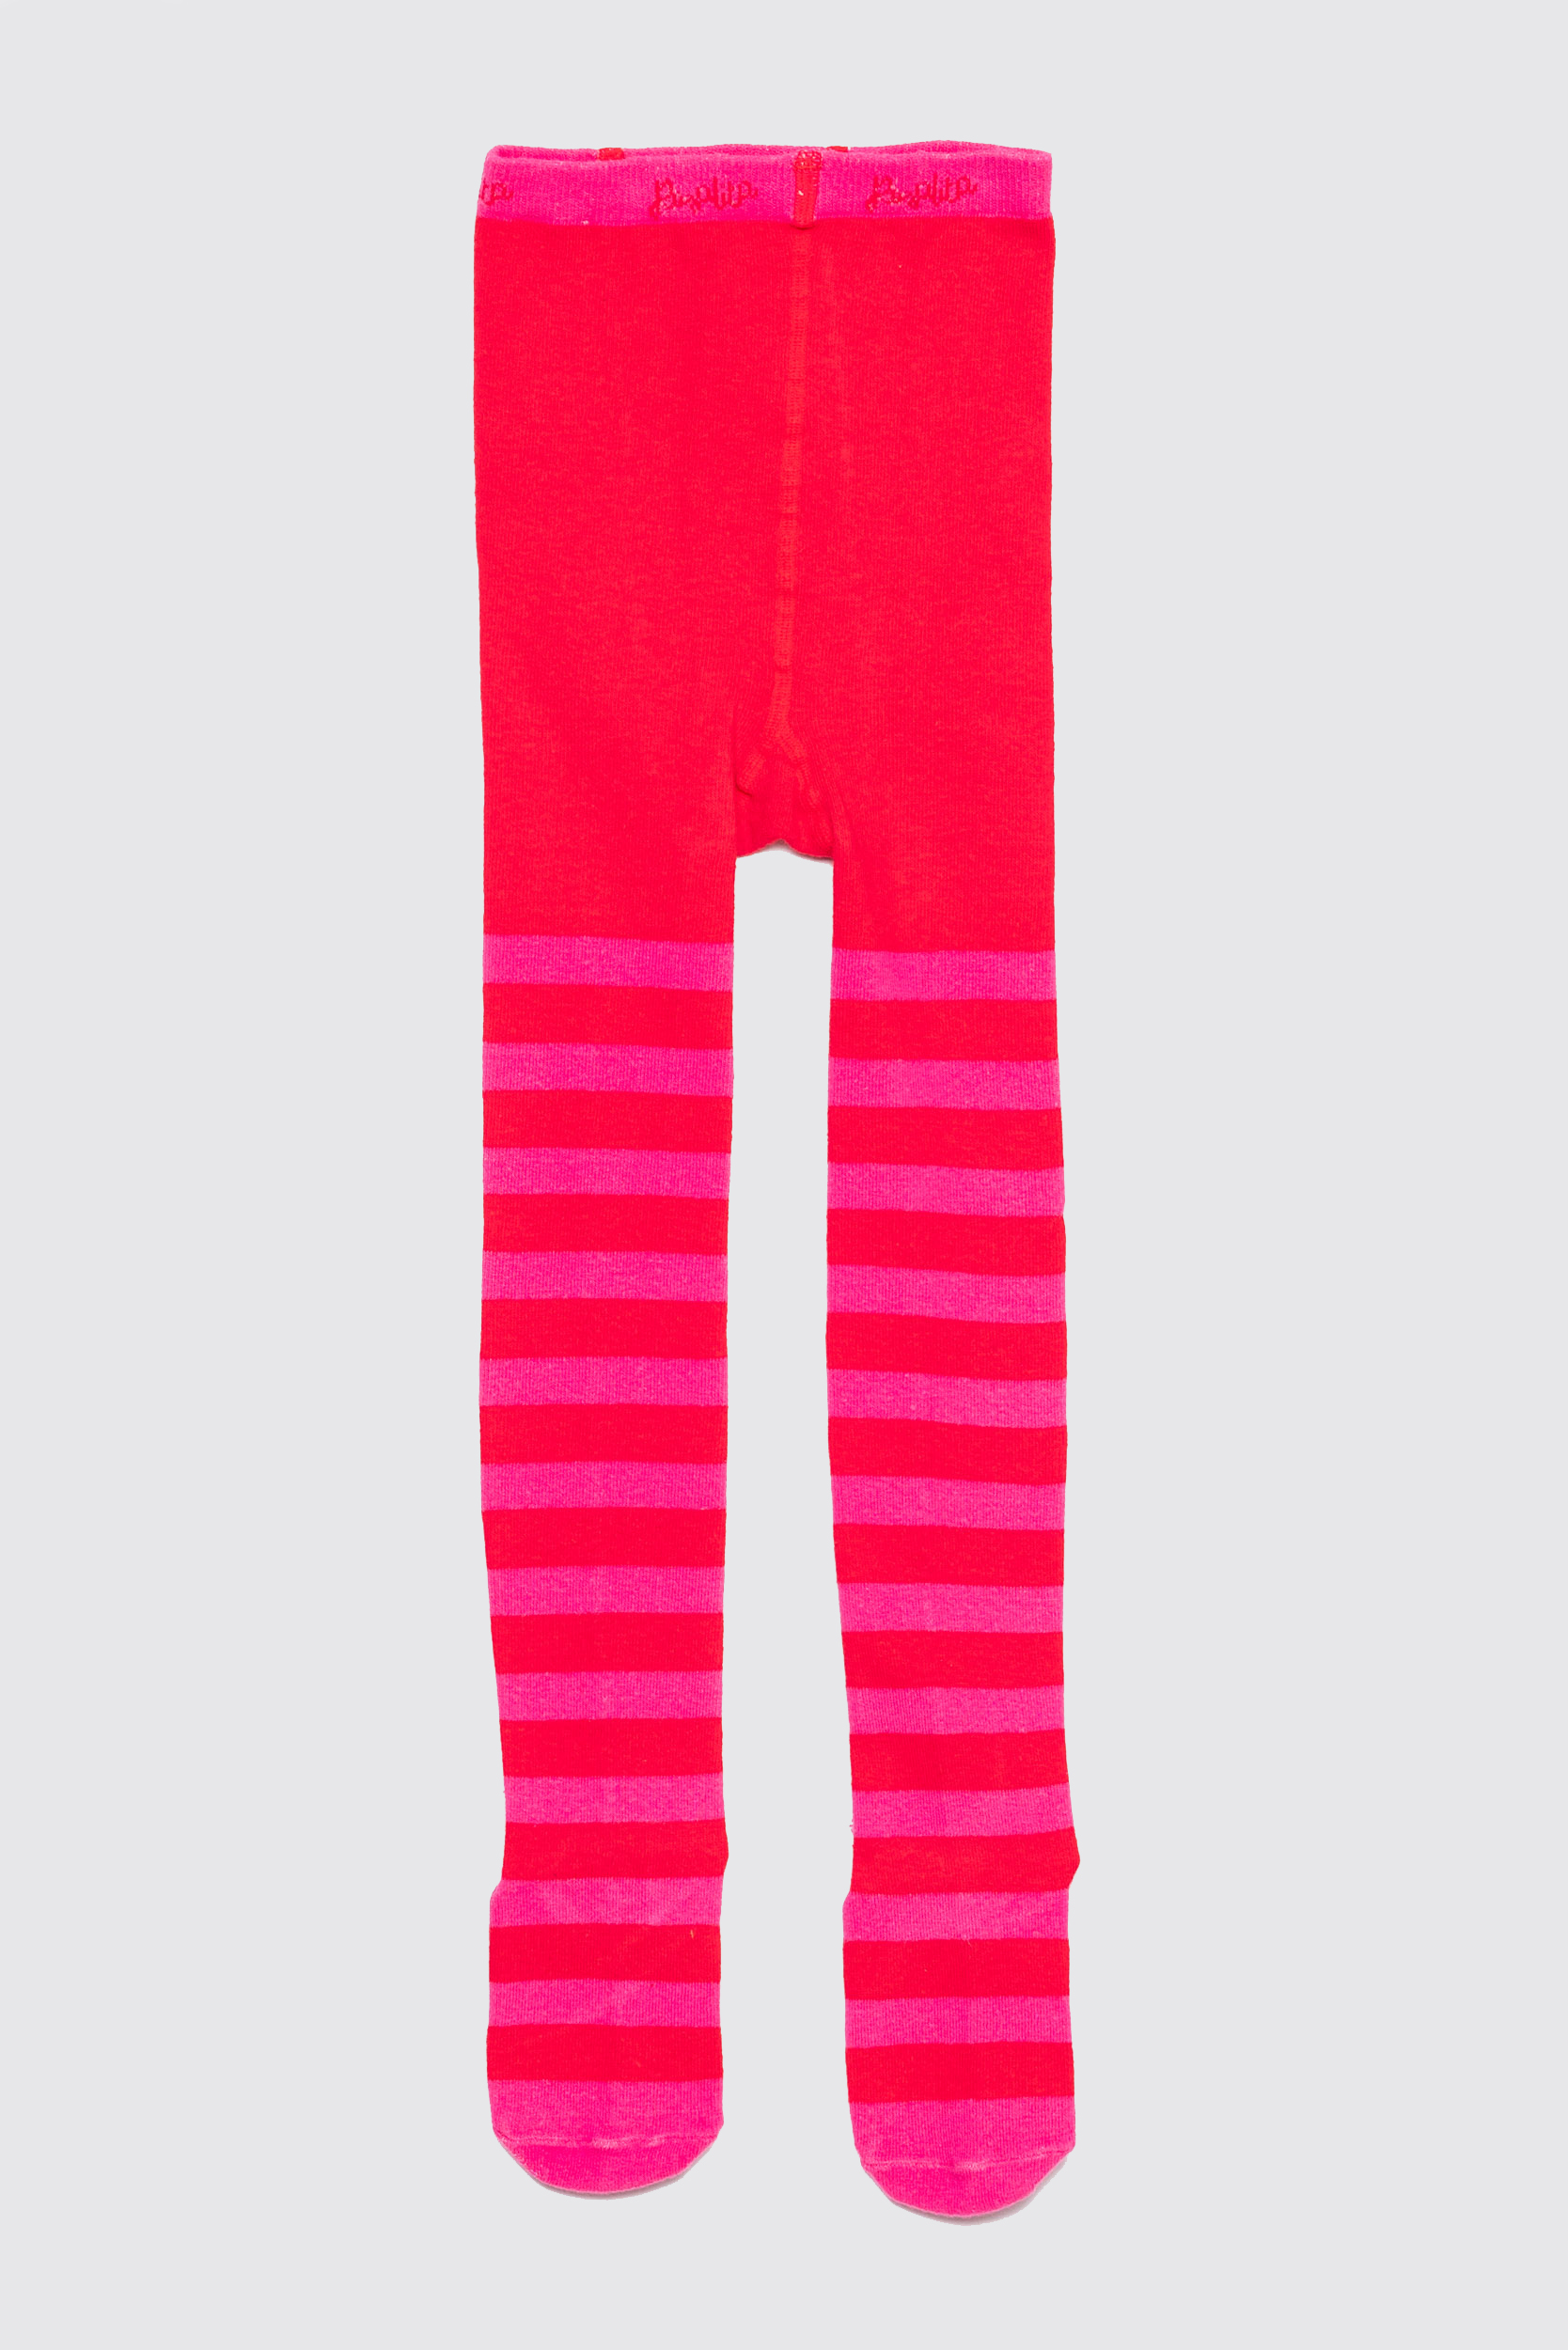 ROSALITA SENORITA Red & Pink Striped Tights - Poppydoll